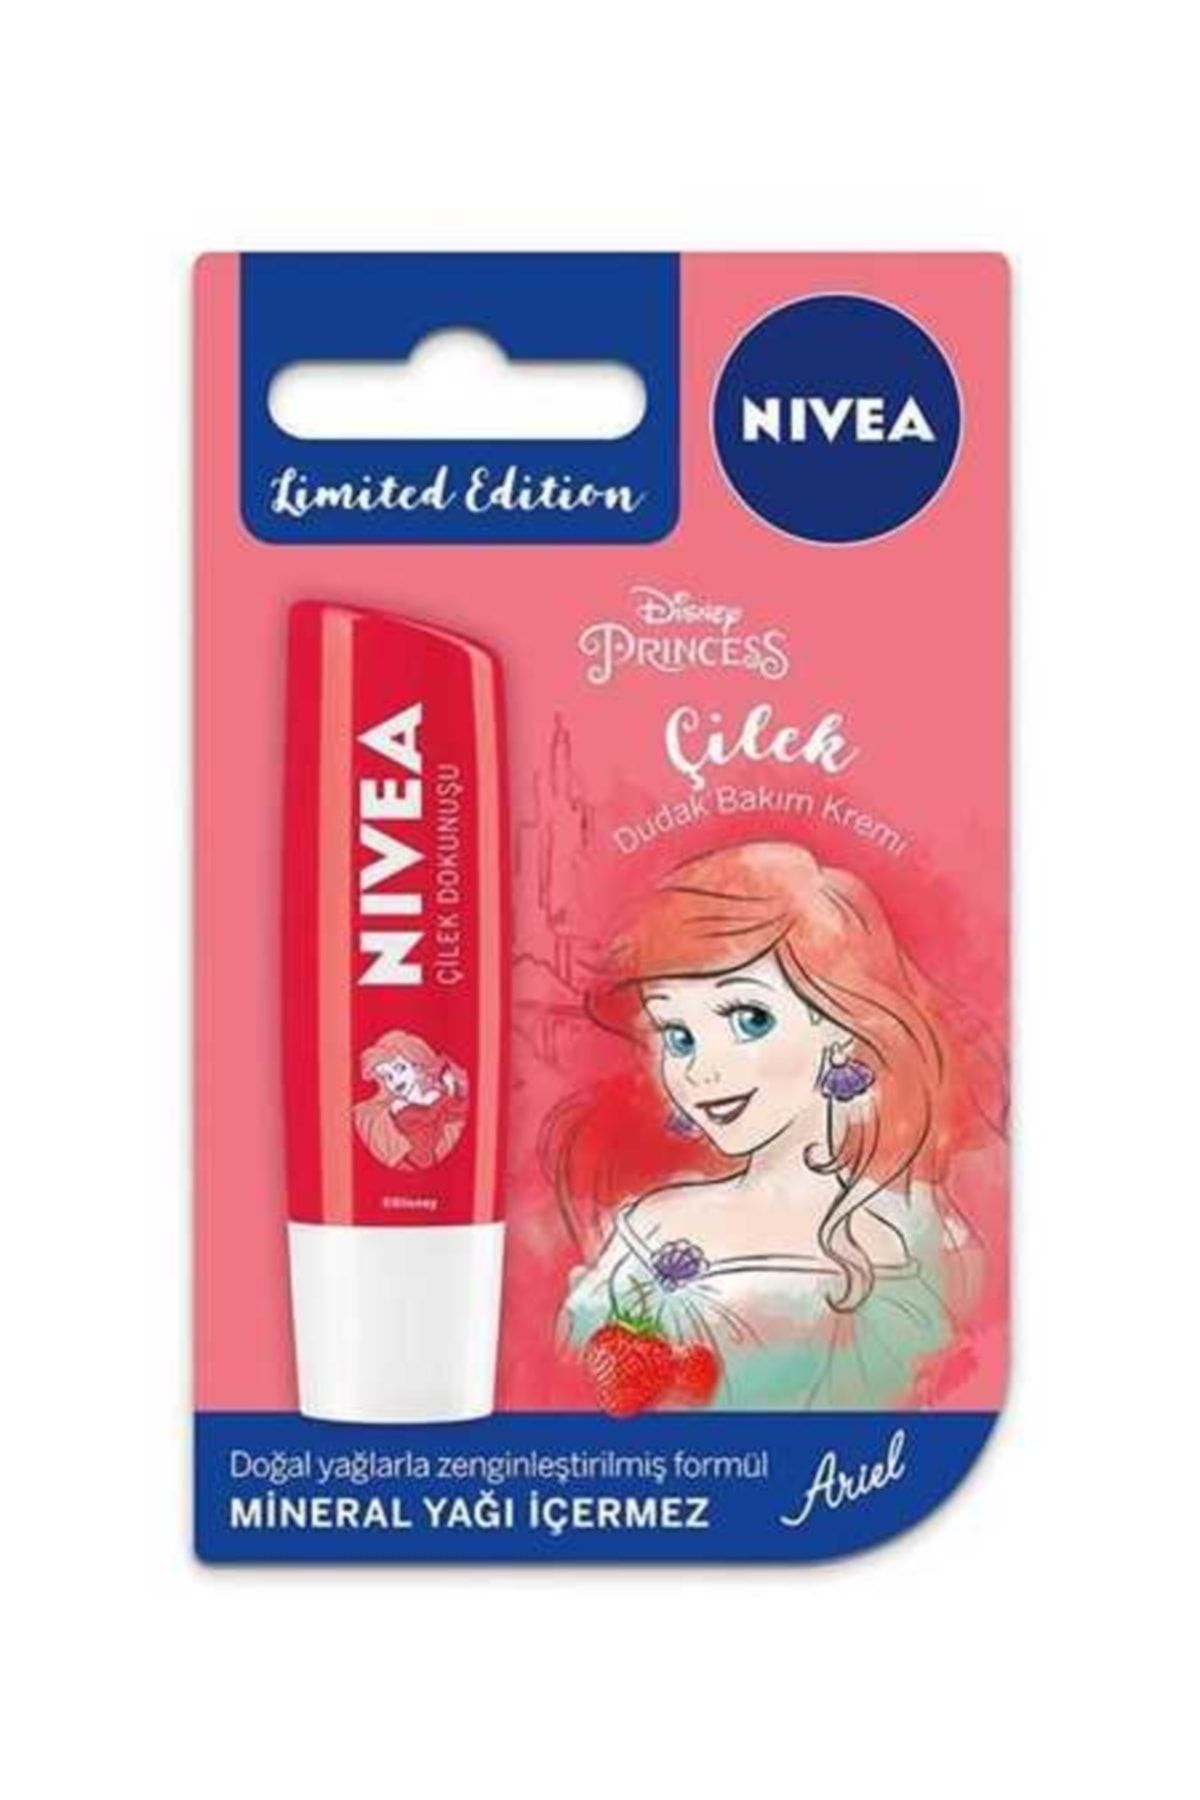 NIVEA Lip Care Çilek Disney - Arıel